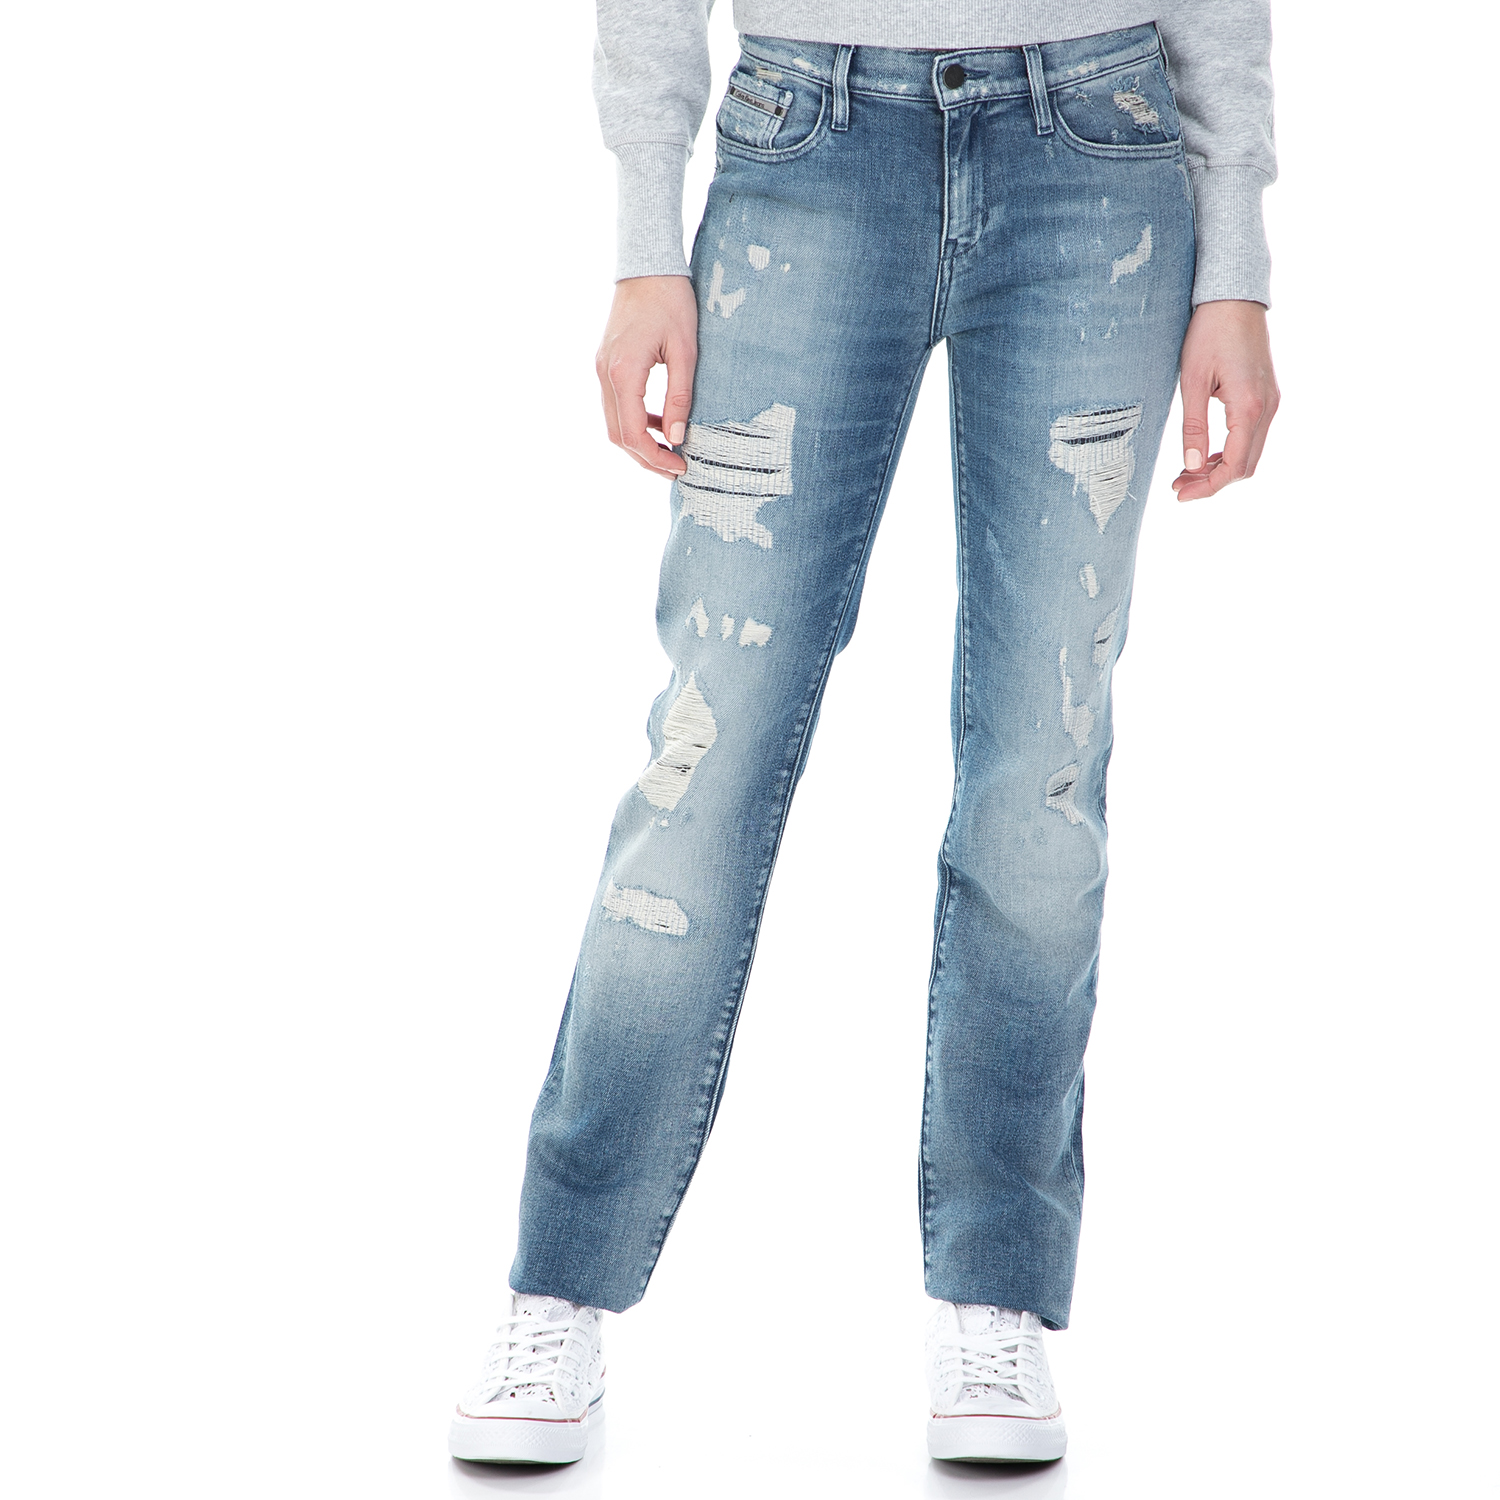 CALVIN KLEIN JEANS - Γυναικείο mid rise straight τζιν παντελόνι Calvin Klein Jeans μπλε με σκισίματα Γυναικεία/Ρούχα/Τζίν/Straight